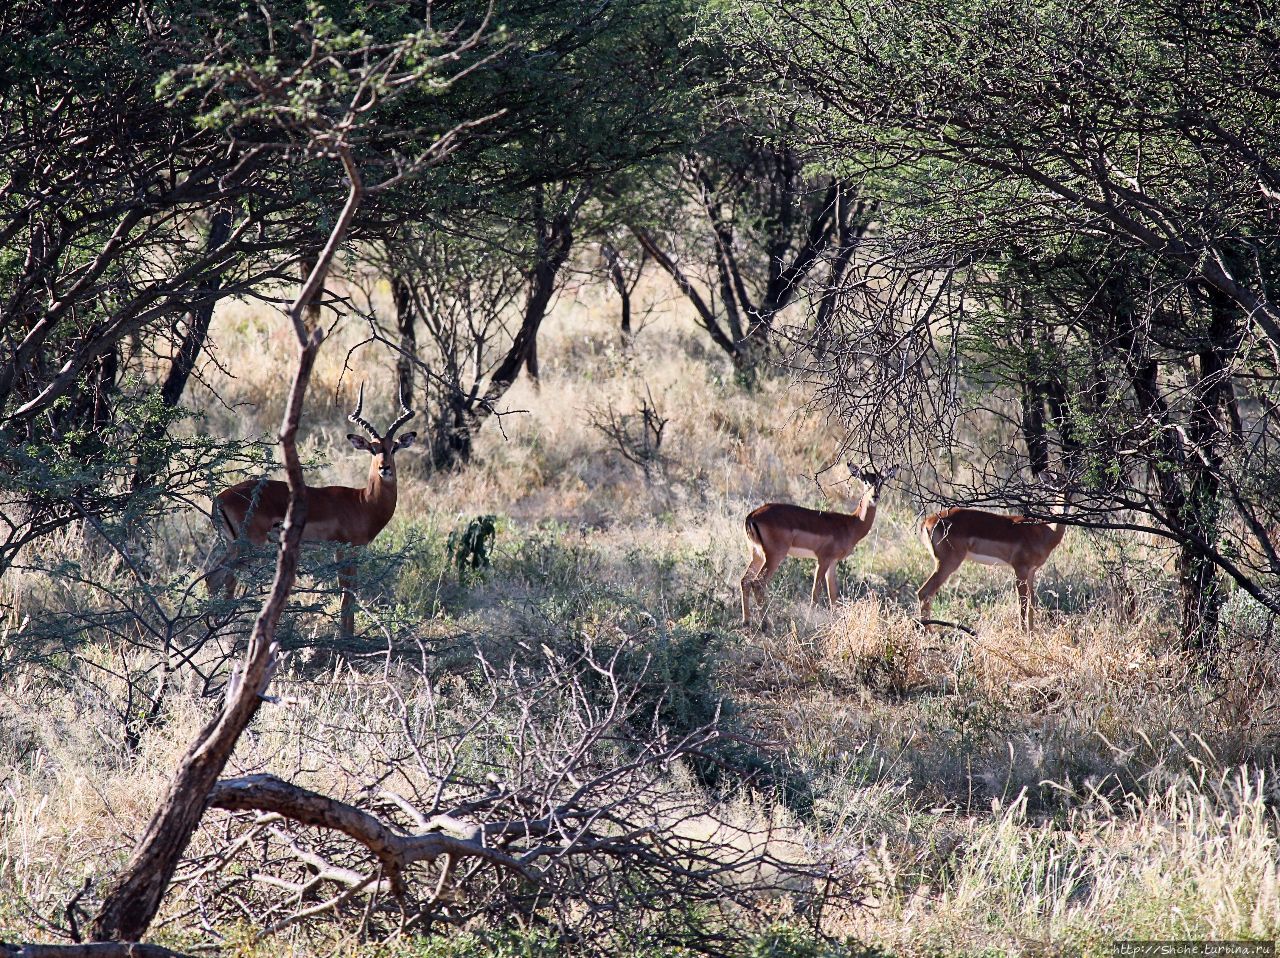 Старый лев борозды не испортит Эринди-Прайвет-Гейм заповедник, Намибия